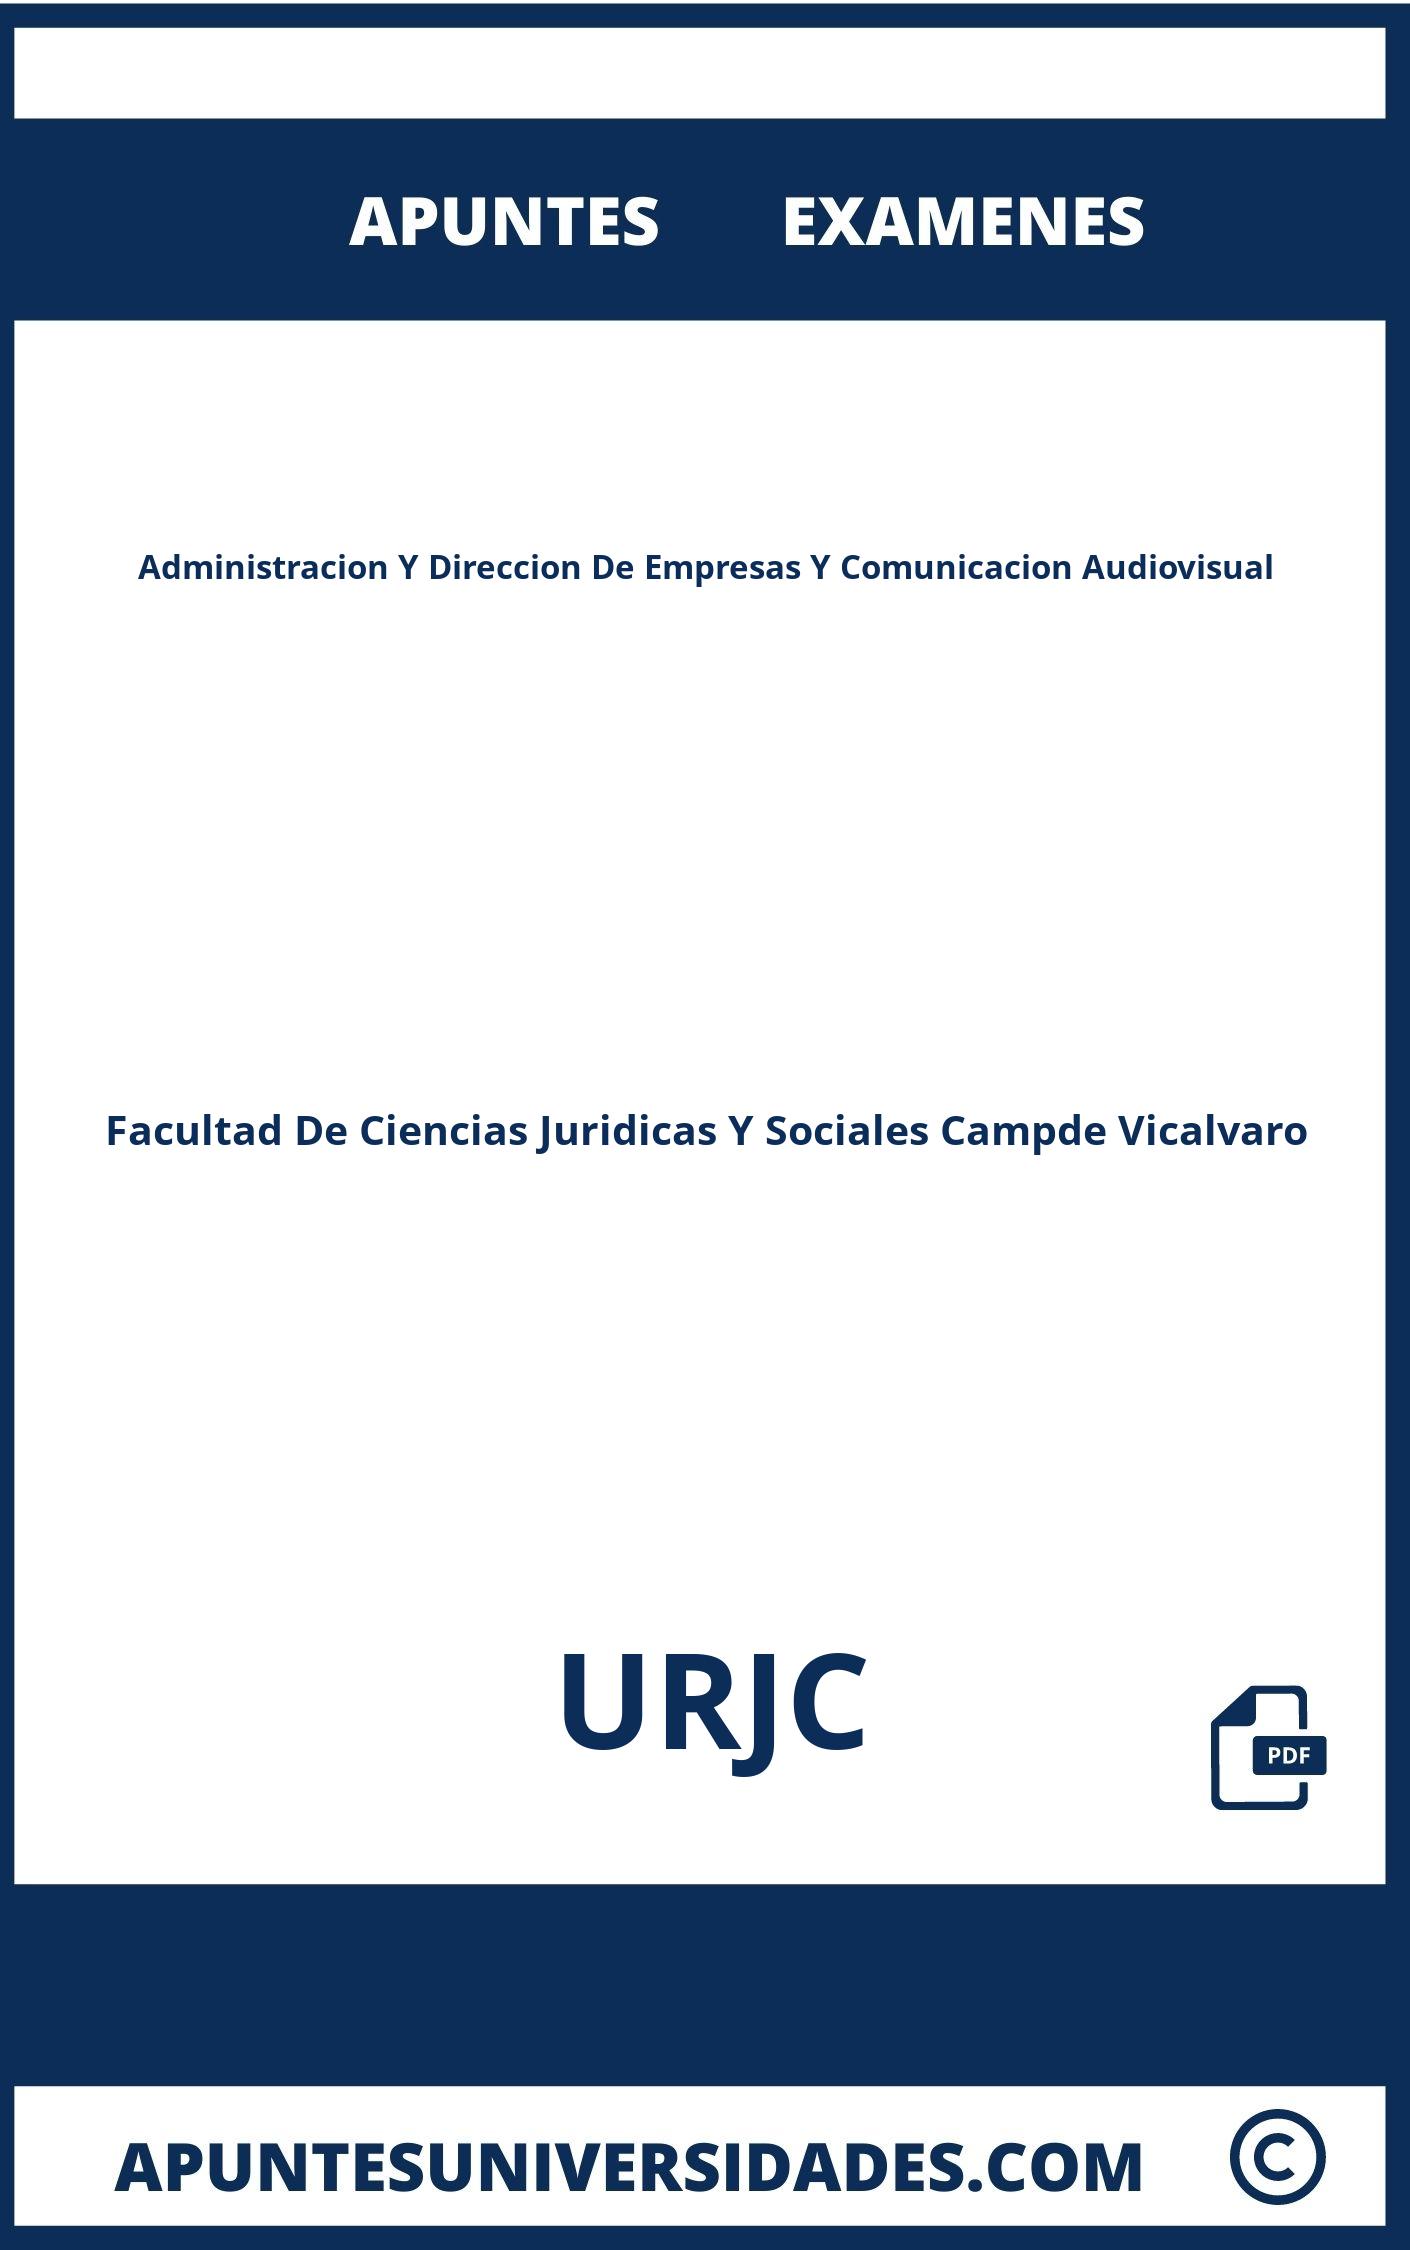 Administracion Y Direccion De Empresas Y Comunicacion Audiovisual URJC Examenes Apuntes